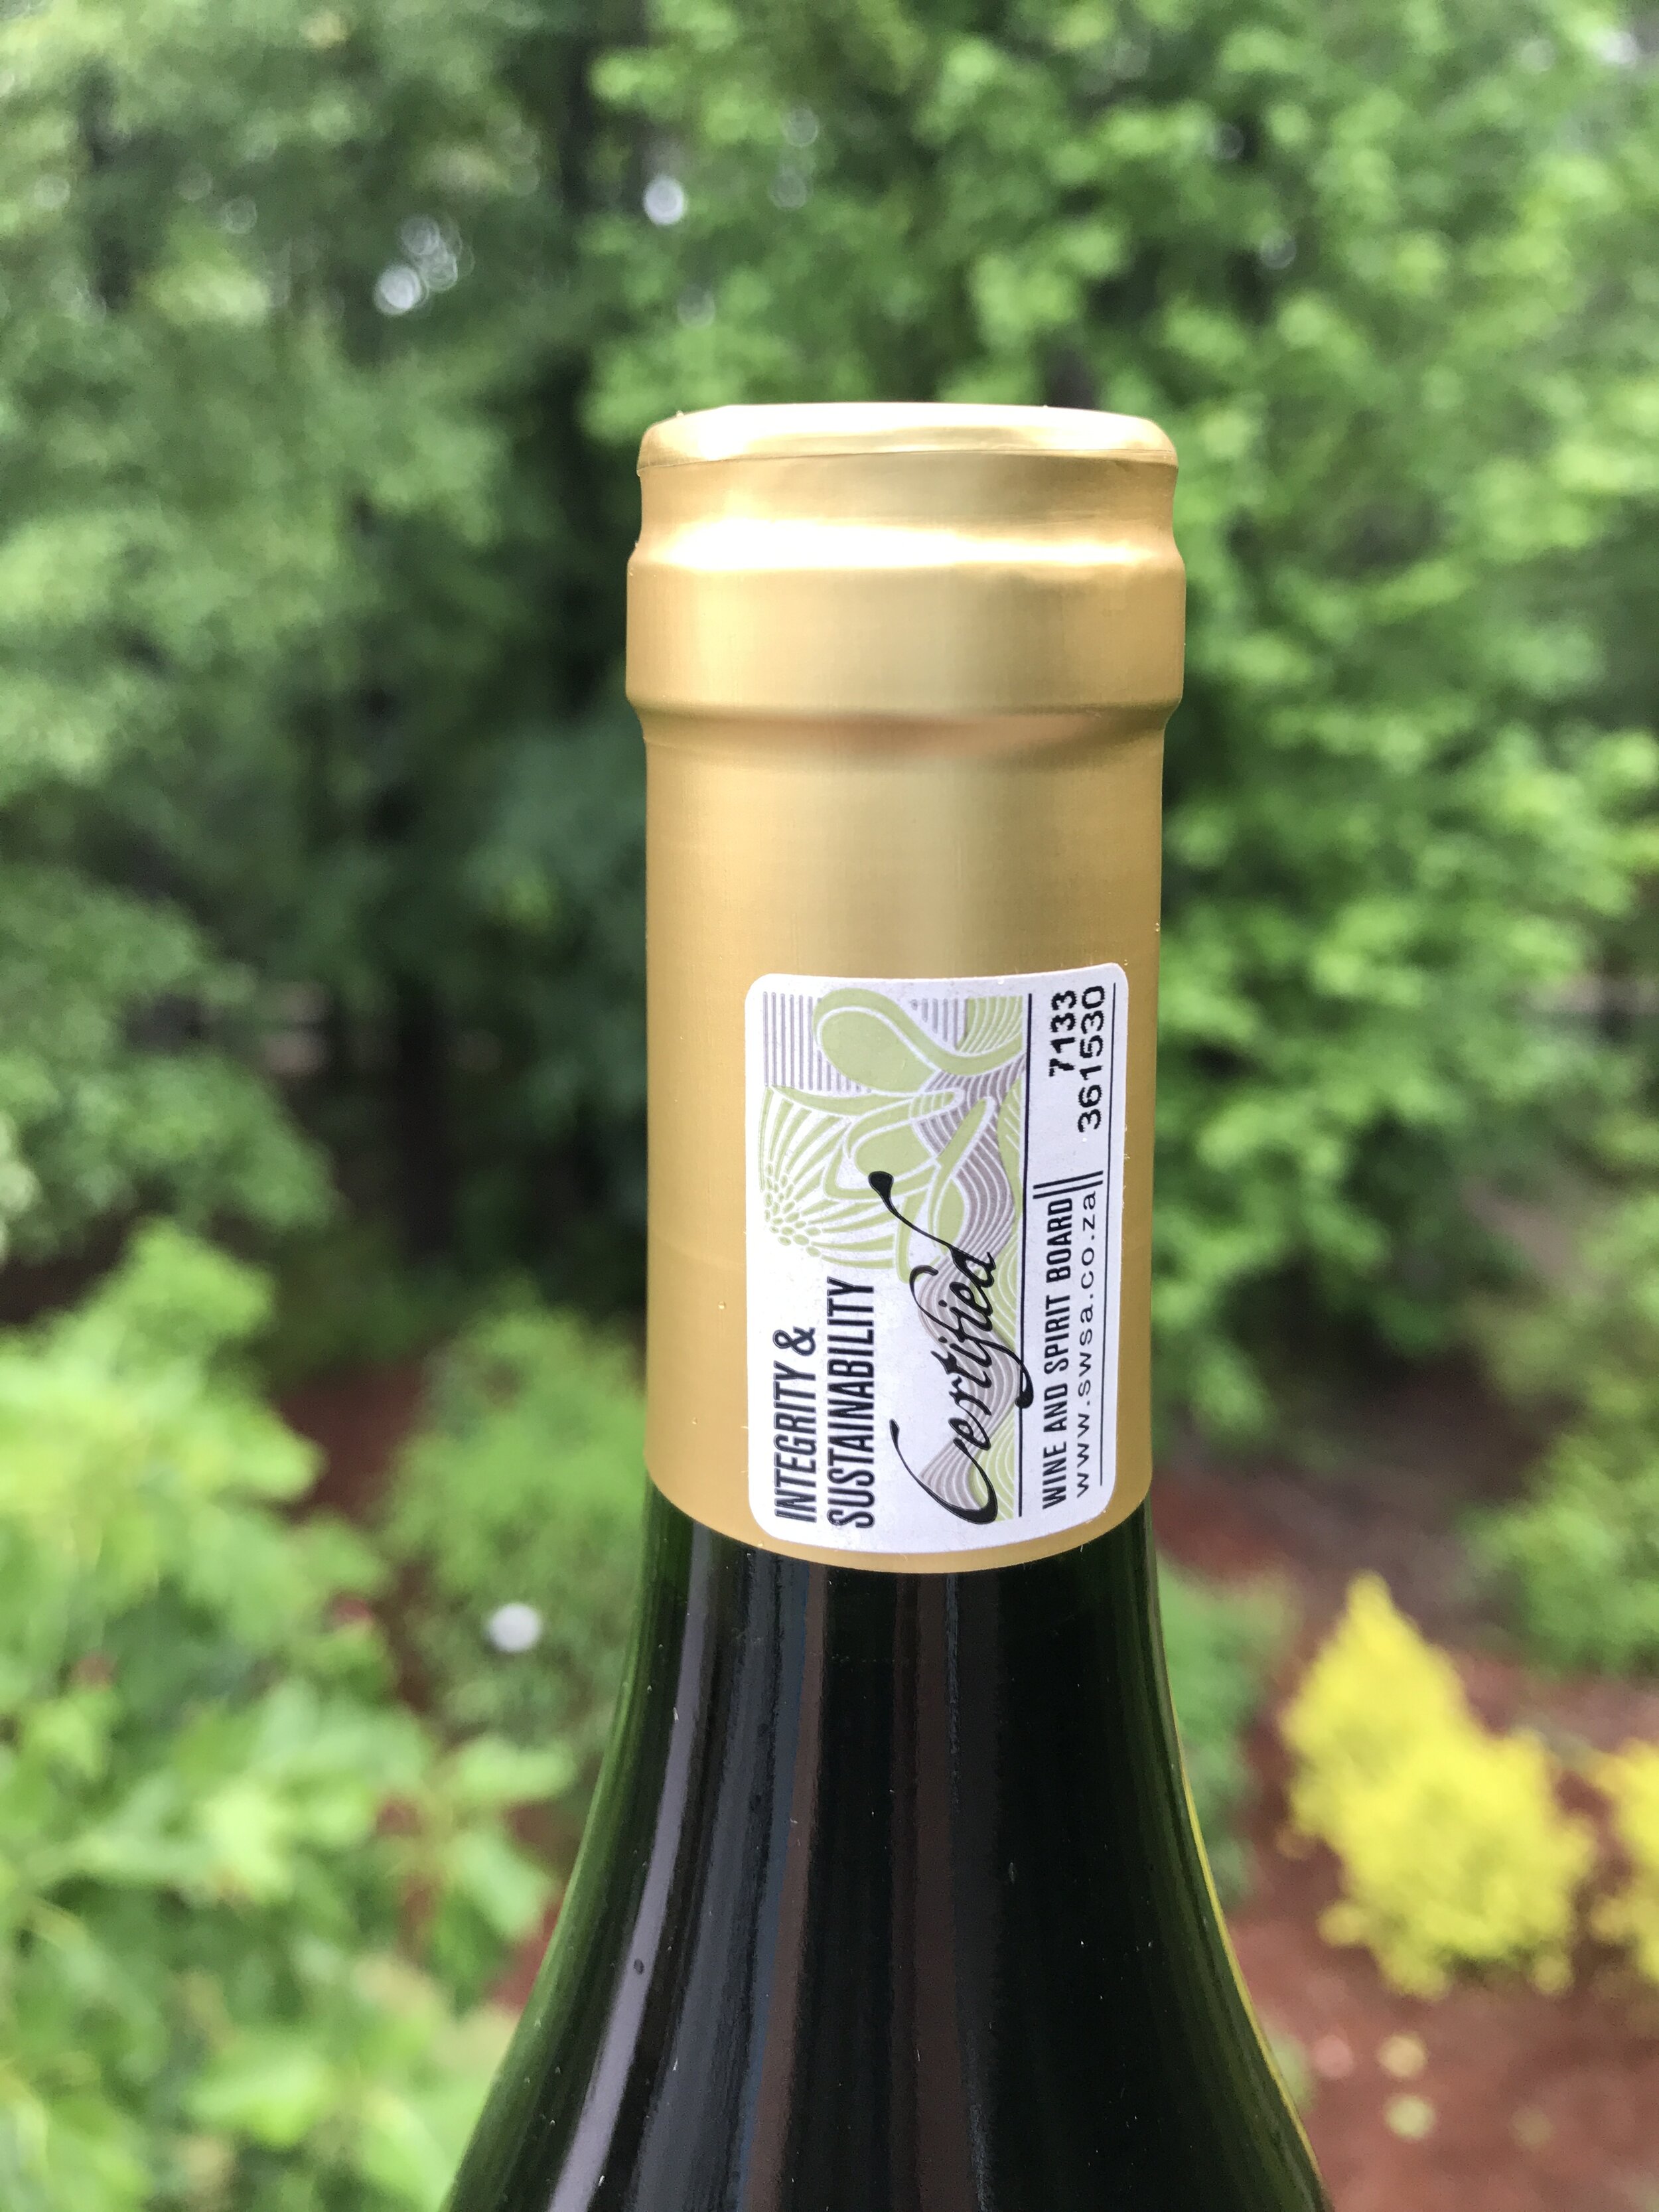 Professional Wine Bottle Foil Cutter Remover Opener Sharp Bar Kitchen Cook FM 